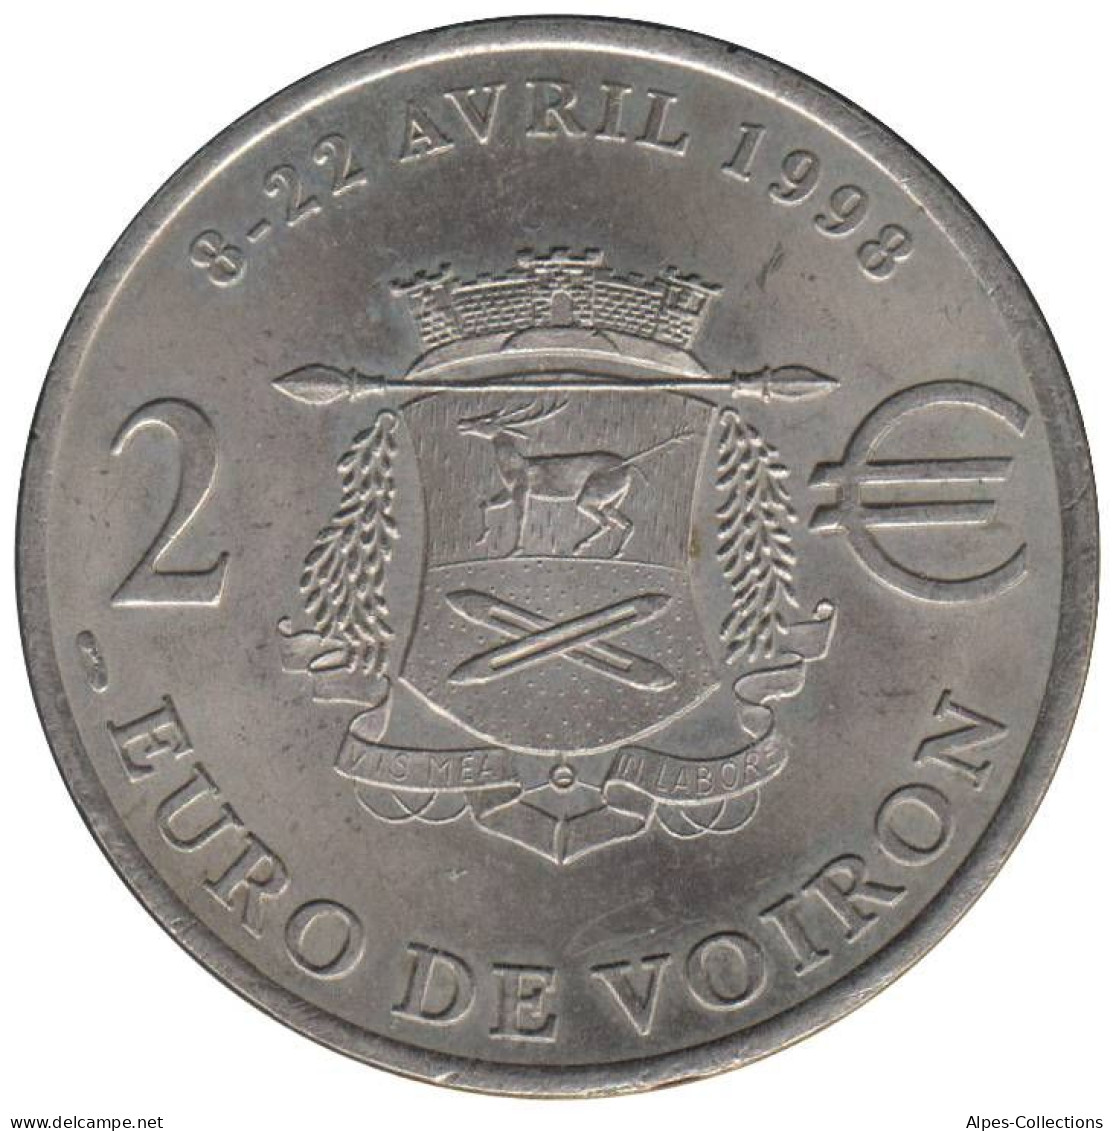 VOIRON - EU0020.2 - 2 EURO DES VILLES - Réf: T575 - 1998 - Euros Of The Cities